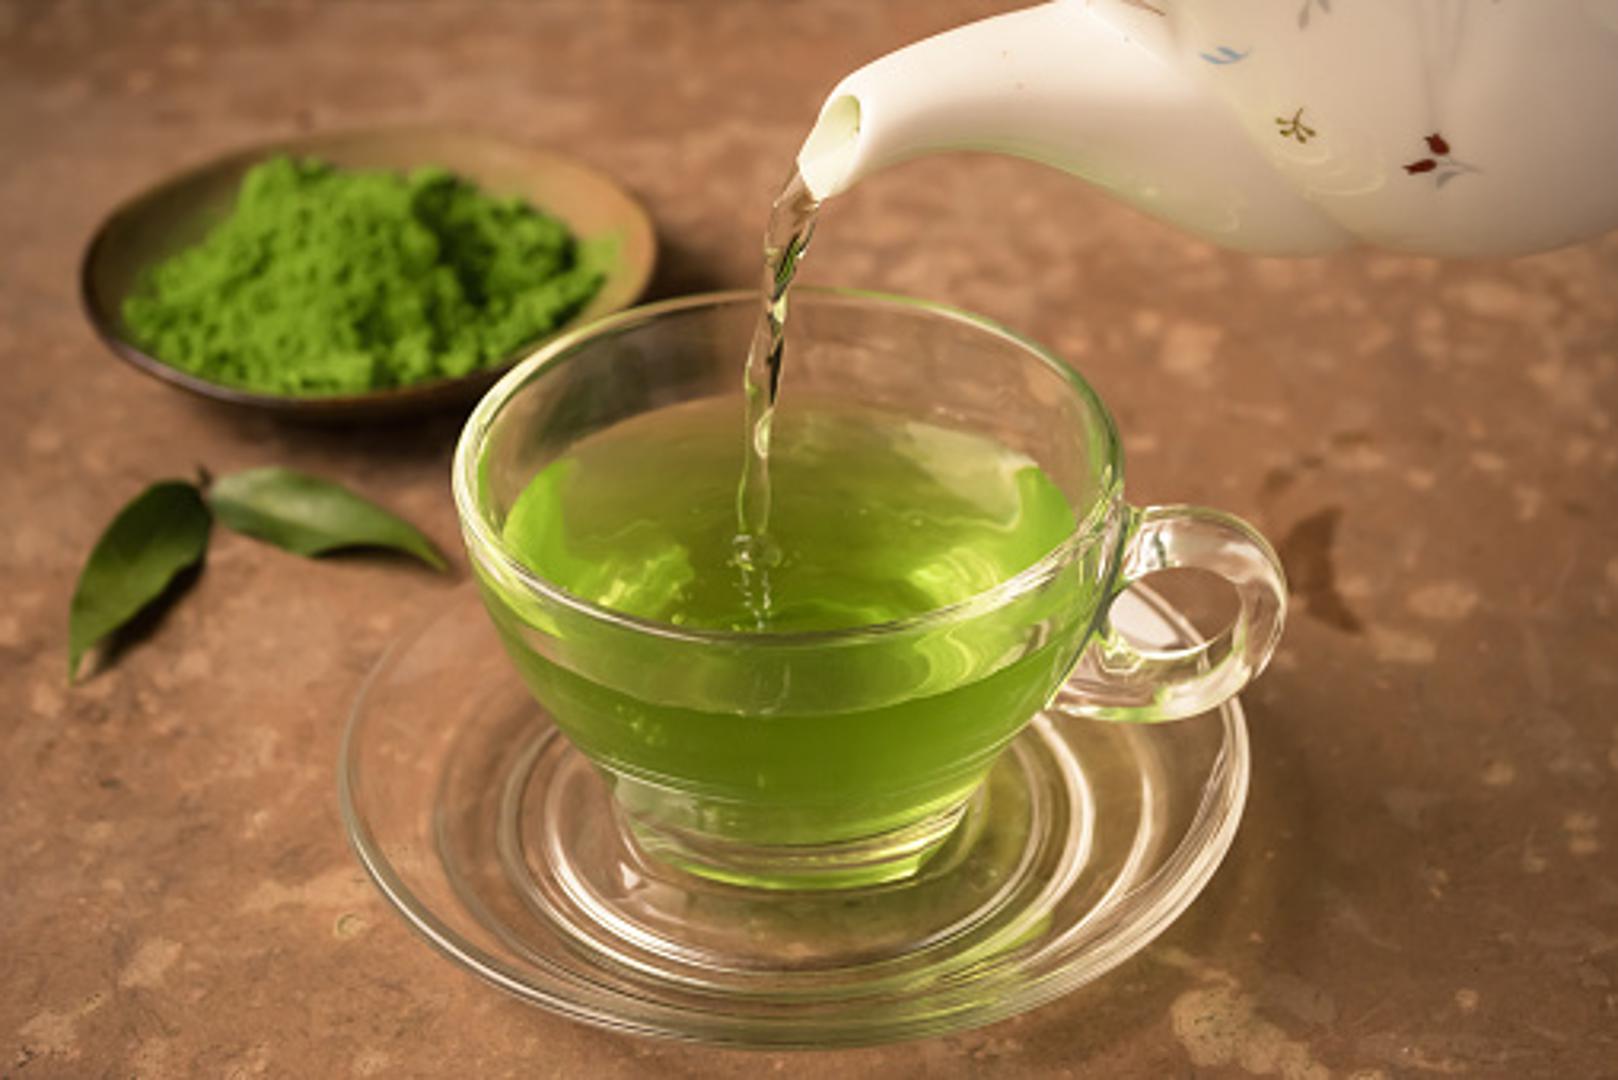 Zeleni čaj opet je u središtu pozornosti. Osim što obiluje antioksidansima, našao se na listi "proizvoda za mršavljenje".  